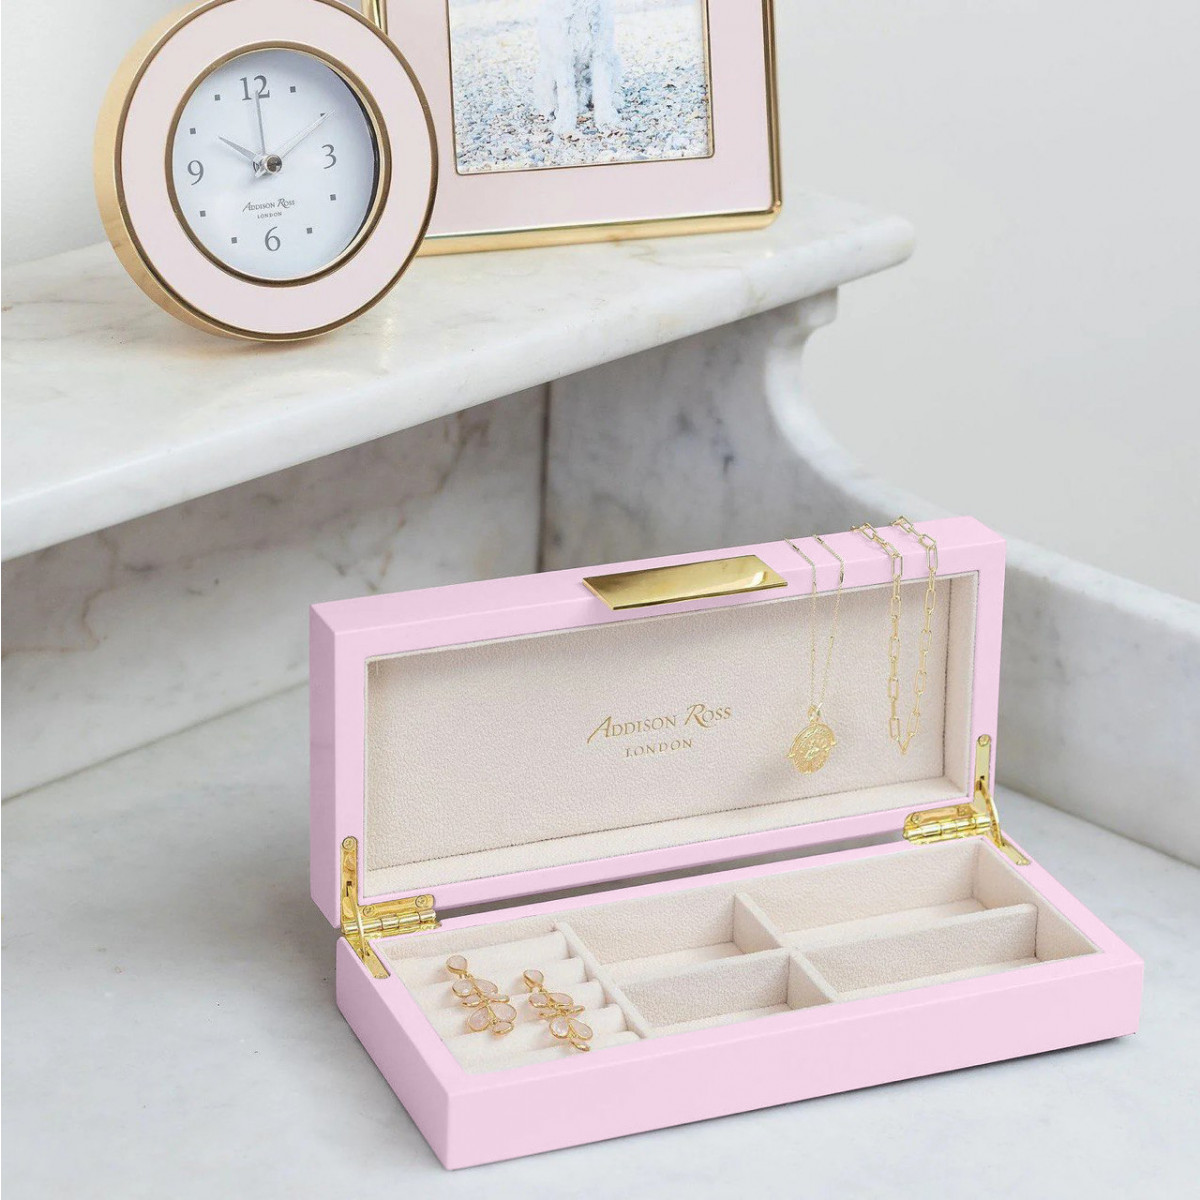 шкатулка для украшений Addison Ross Pale Pink Gold - купить в магазине Yves Delorme Russia